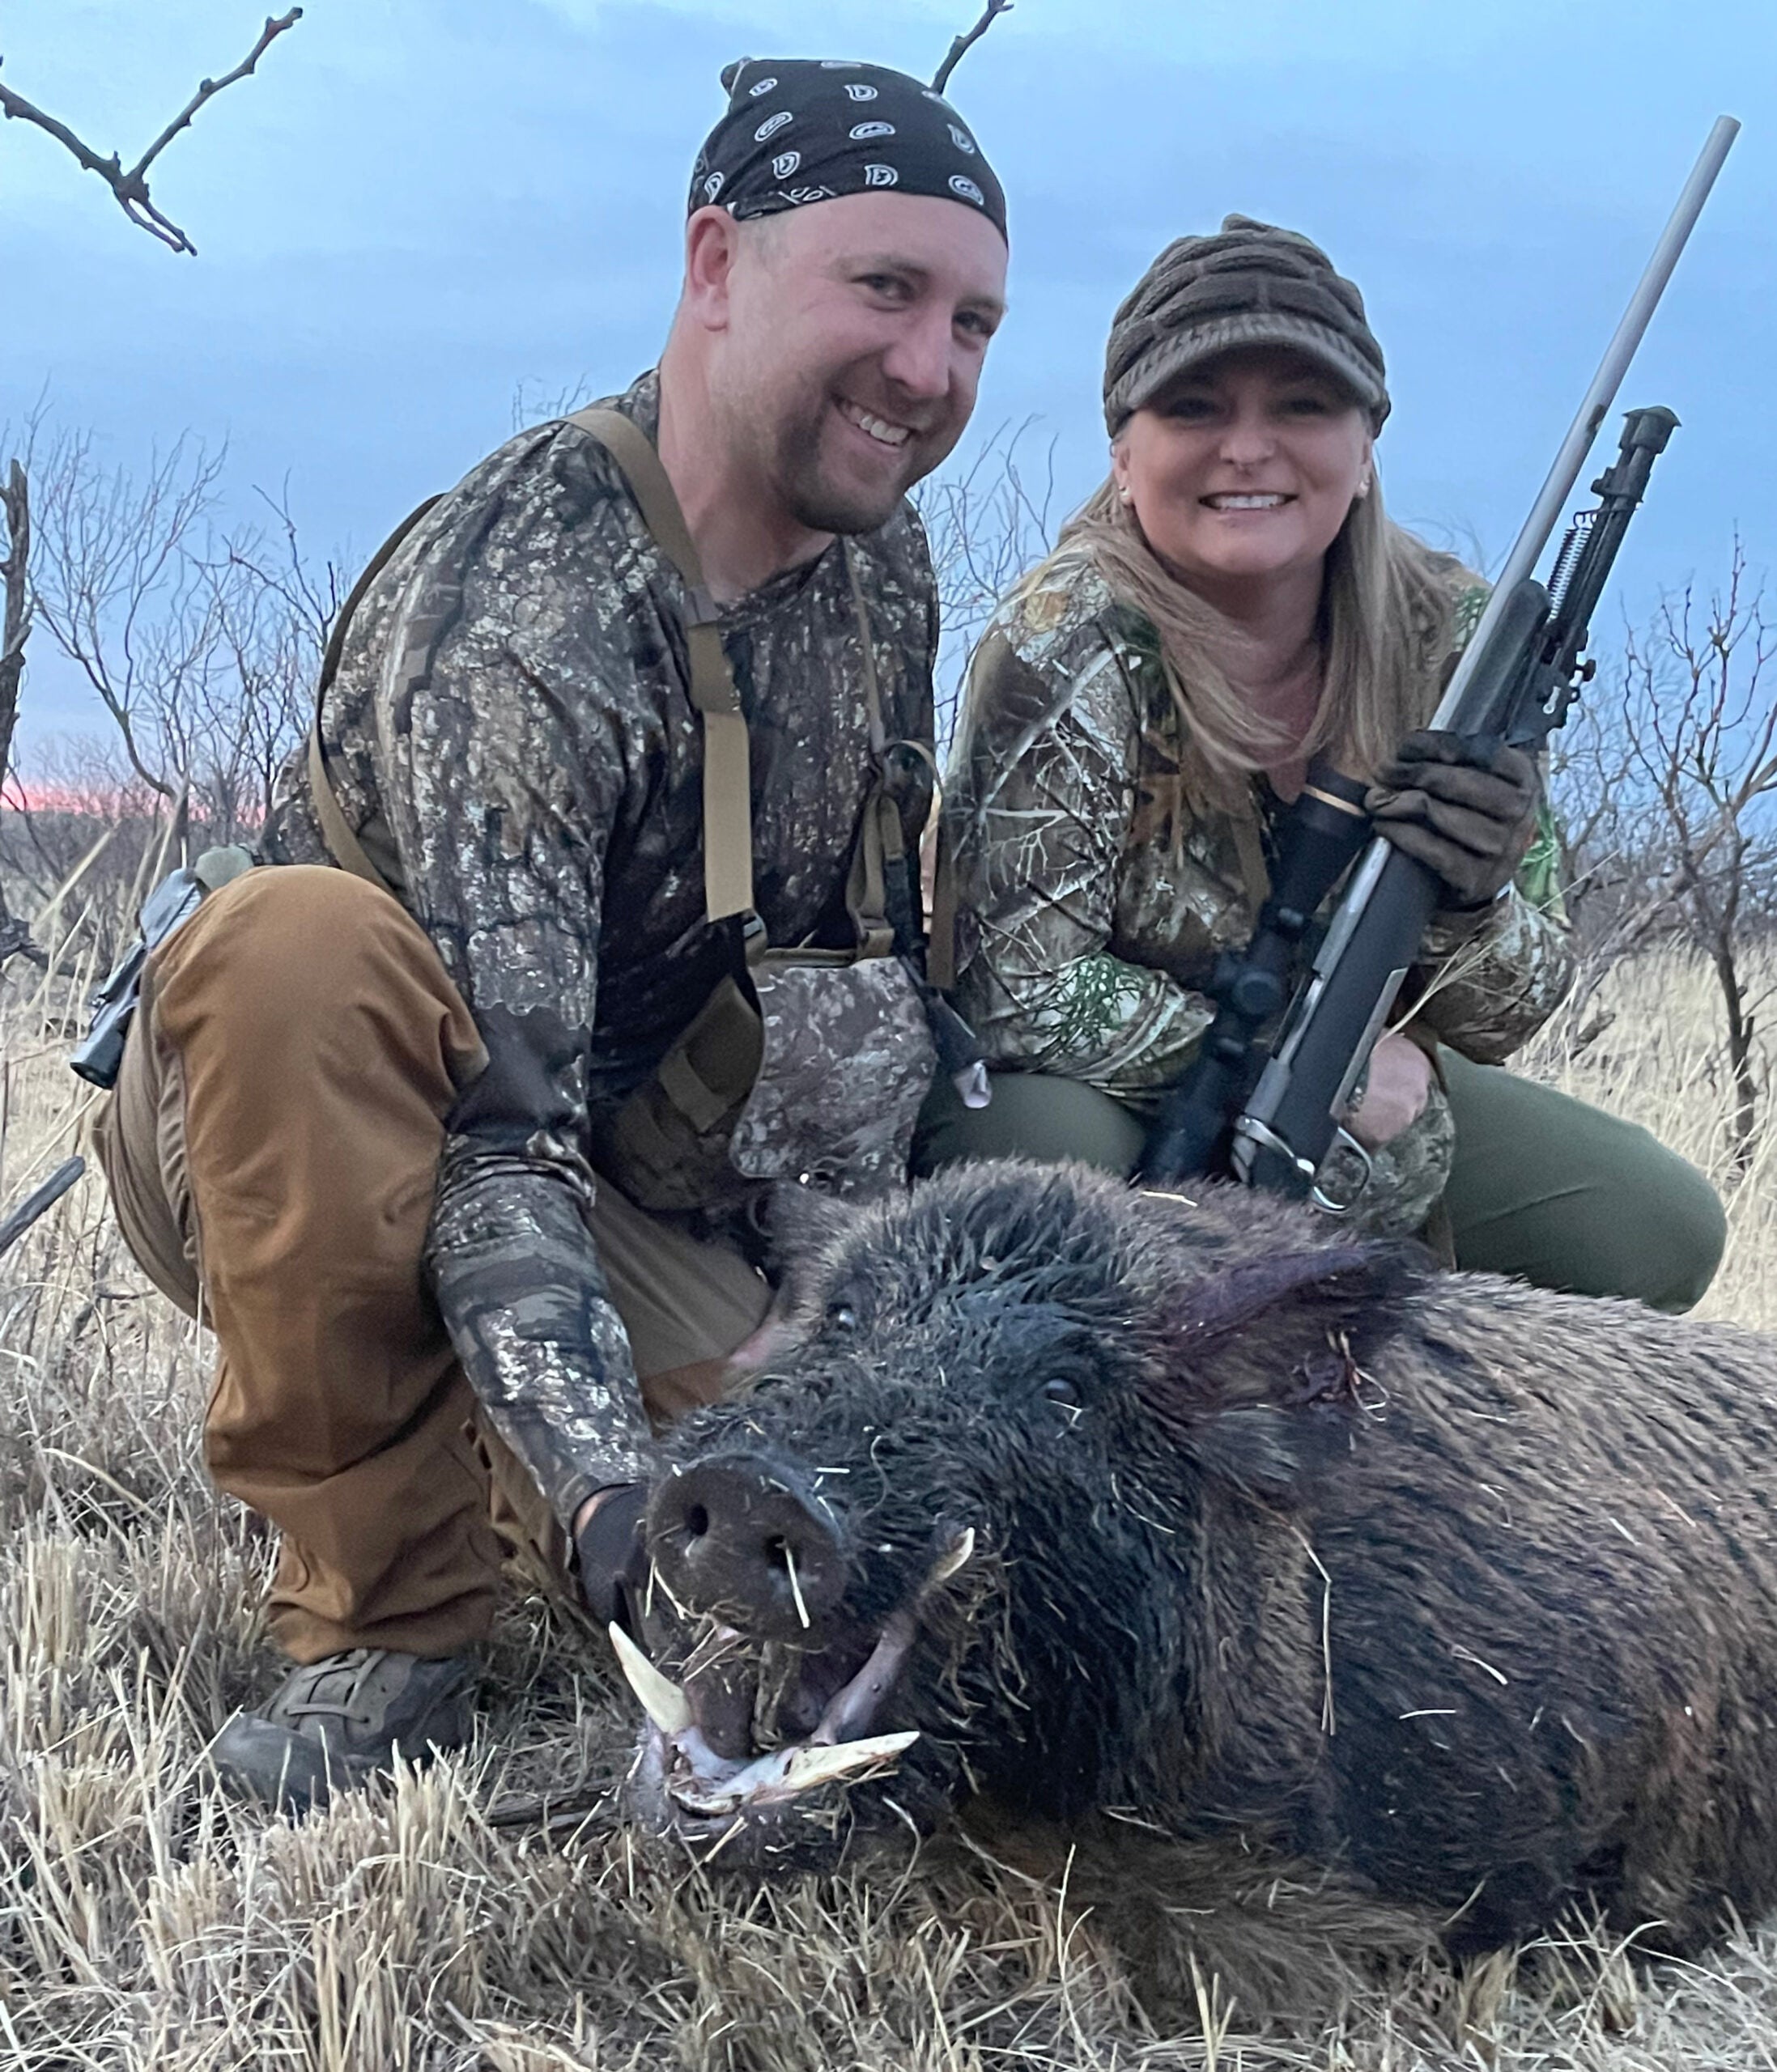 hunters with a boar hog taken in West Texas